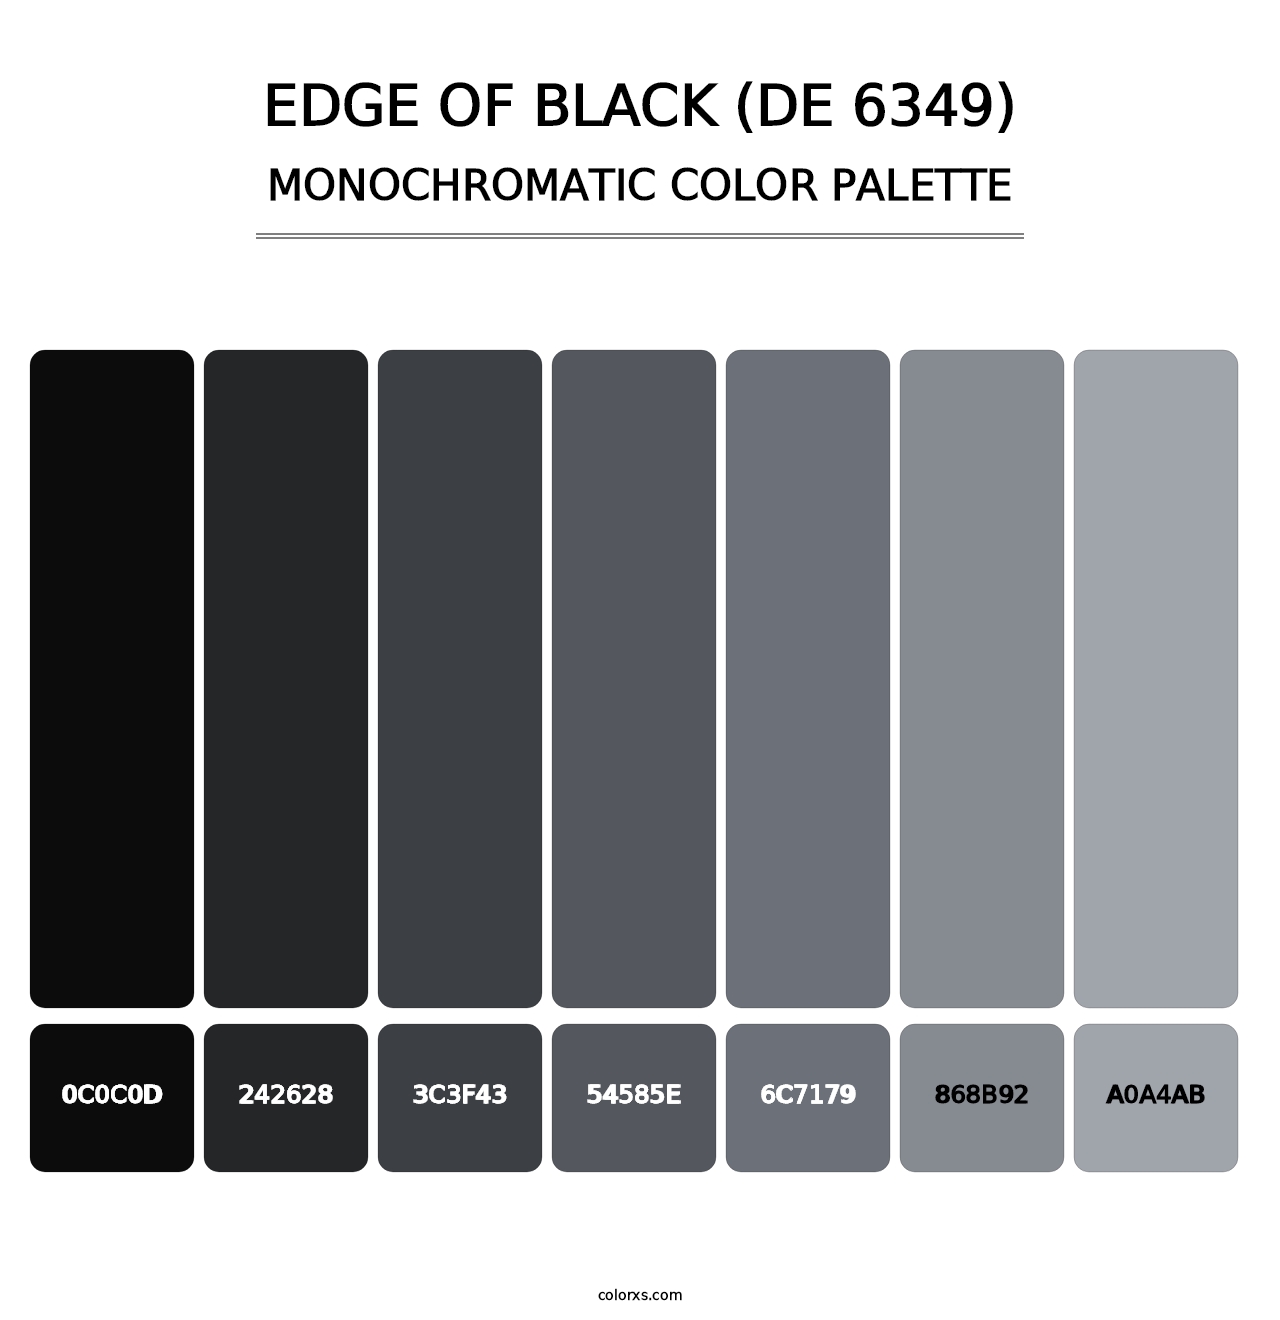 Edge of Black (DE 6349) - Monochromatic Color Palette